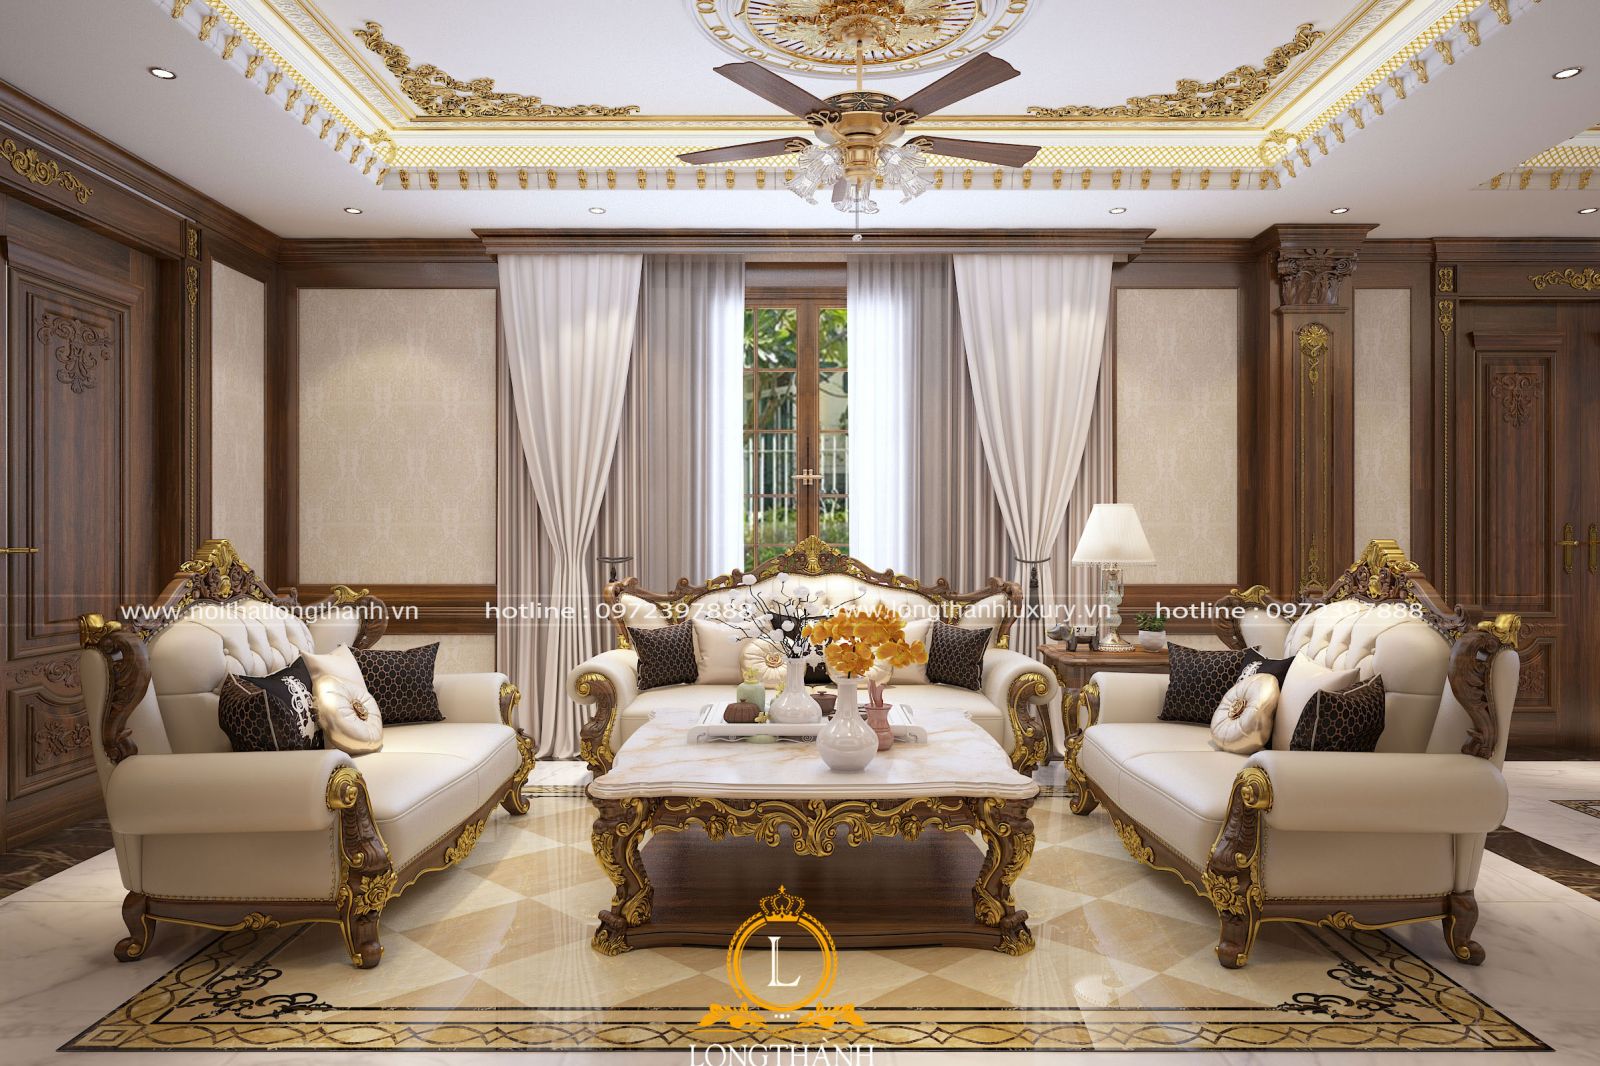 Bộ sofa tân cổ điển được thiết kế và bài trí làm nổi bật cho không gian phòng khách